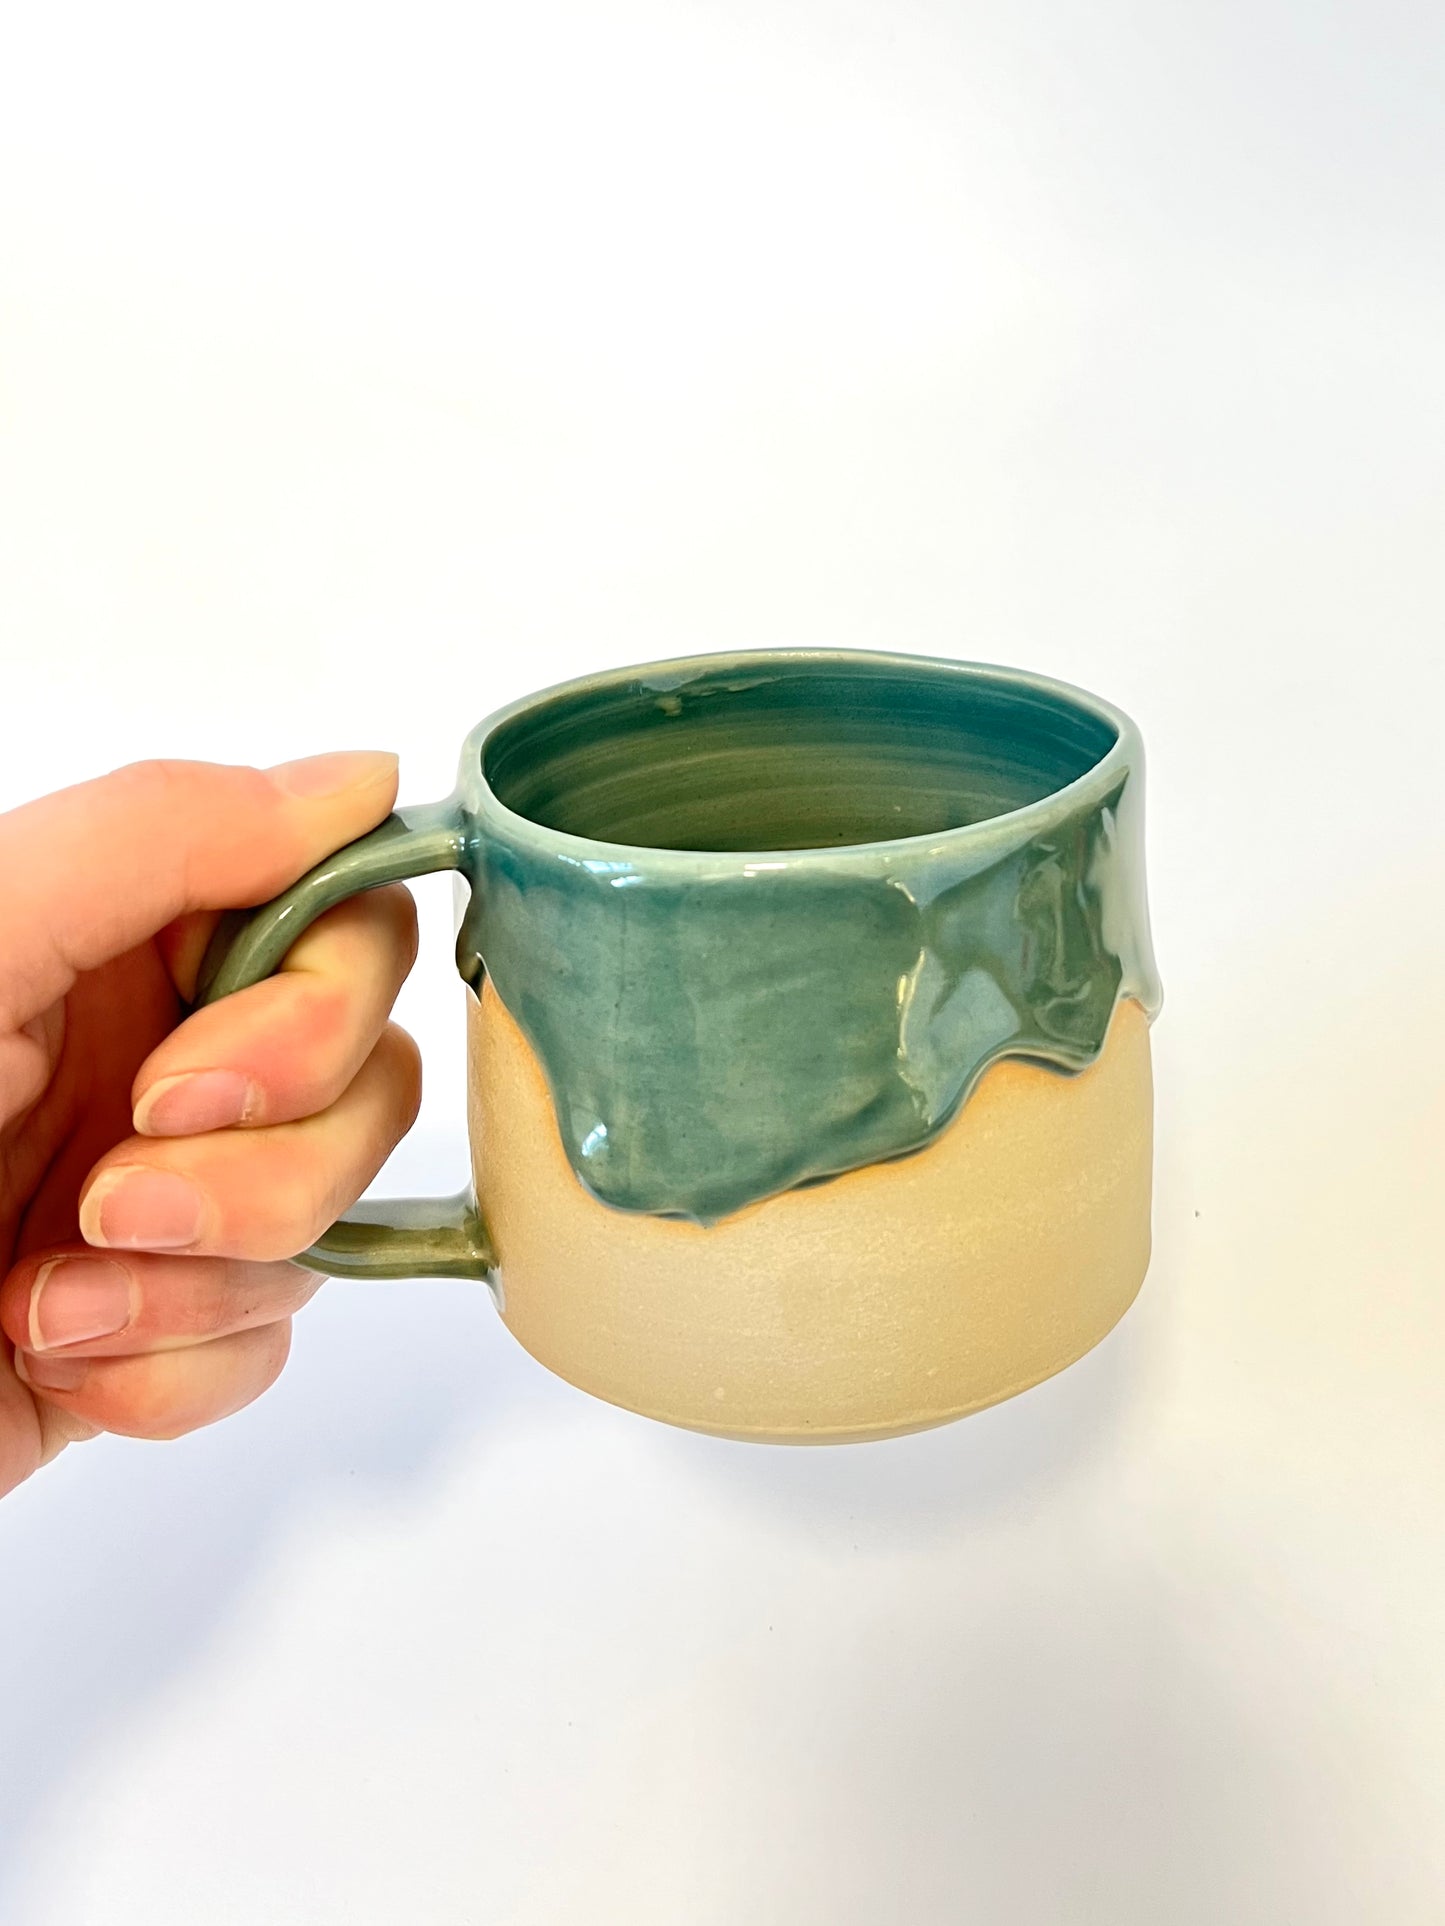 Ceramic "Drippy" Mug - Teal